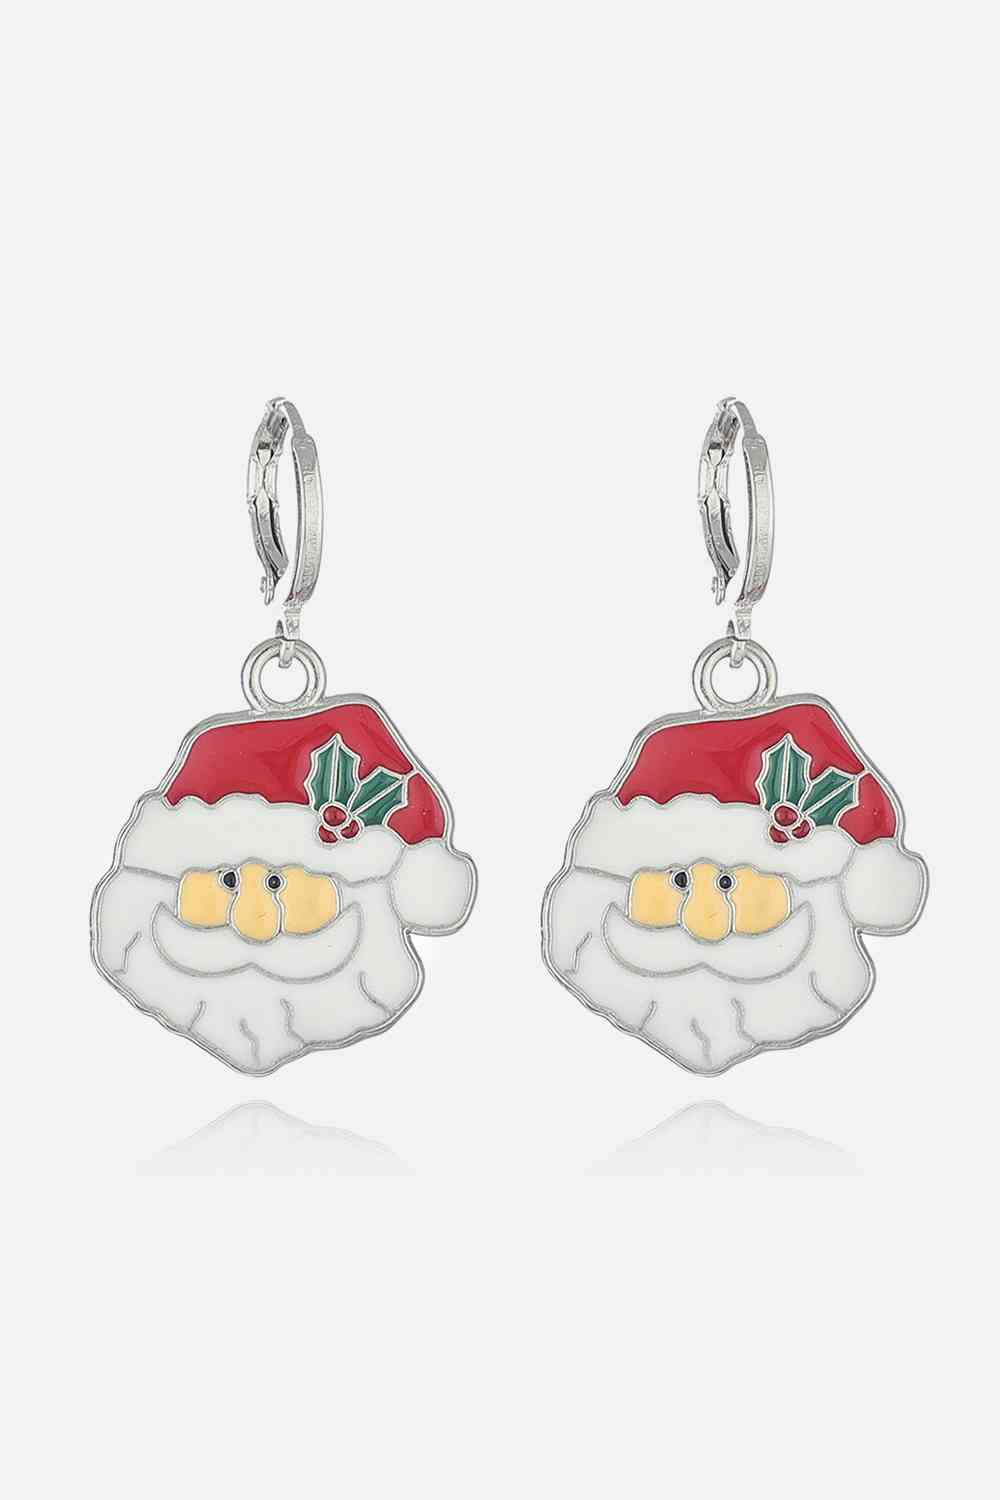 Christmas Theme Alloy Earrings - Style H / One Size - Women’s Jewelry - Earrings - 6 - 2024